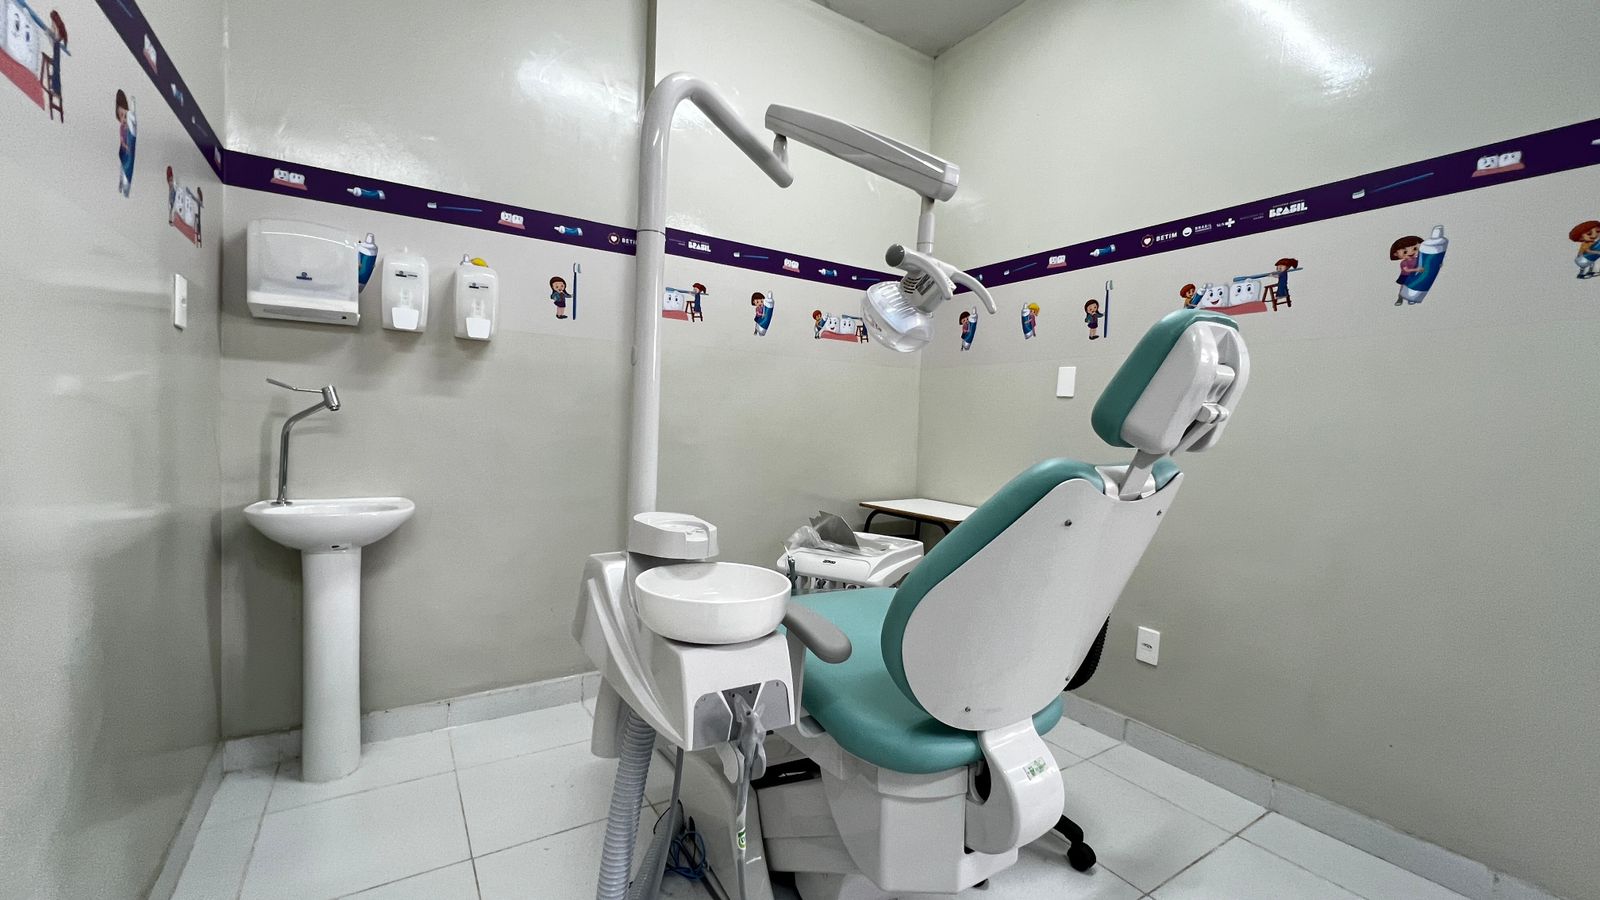 Novo Centro de Especialidades Odontológicas conta com sete consultórios, incluindo um cirúrgico, e um laboratório de próteses dentárias